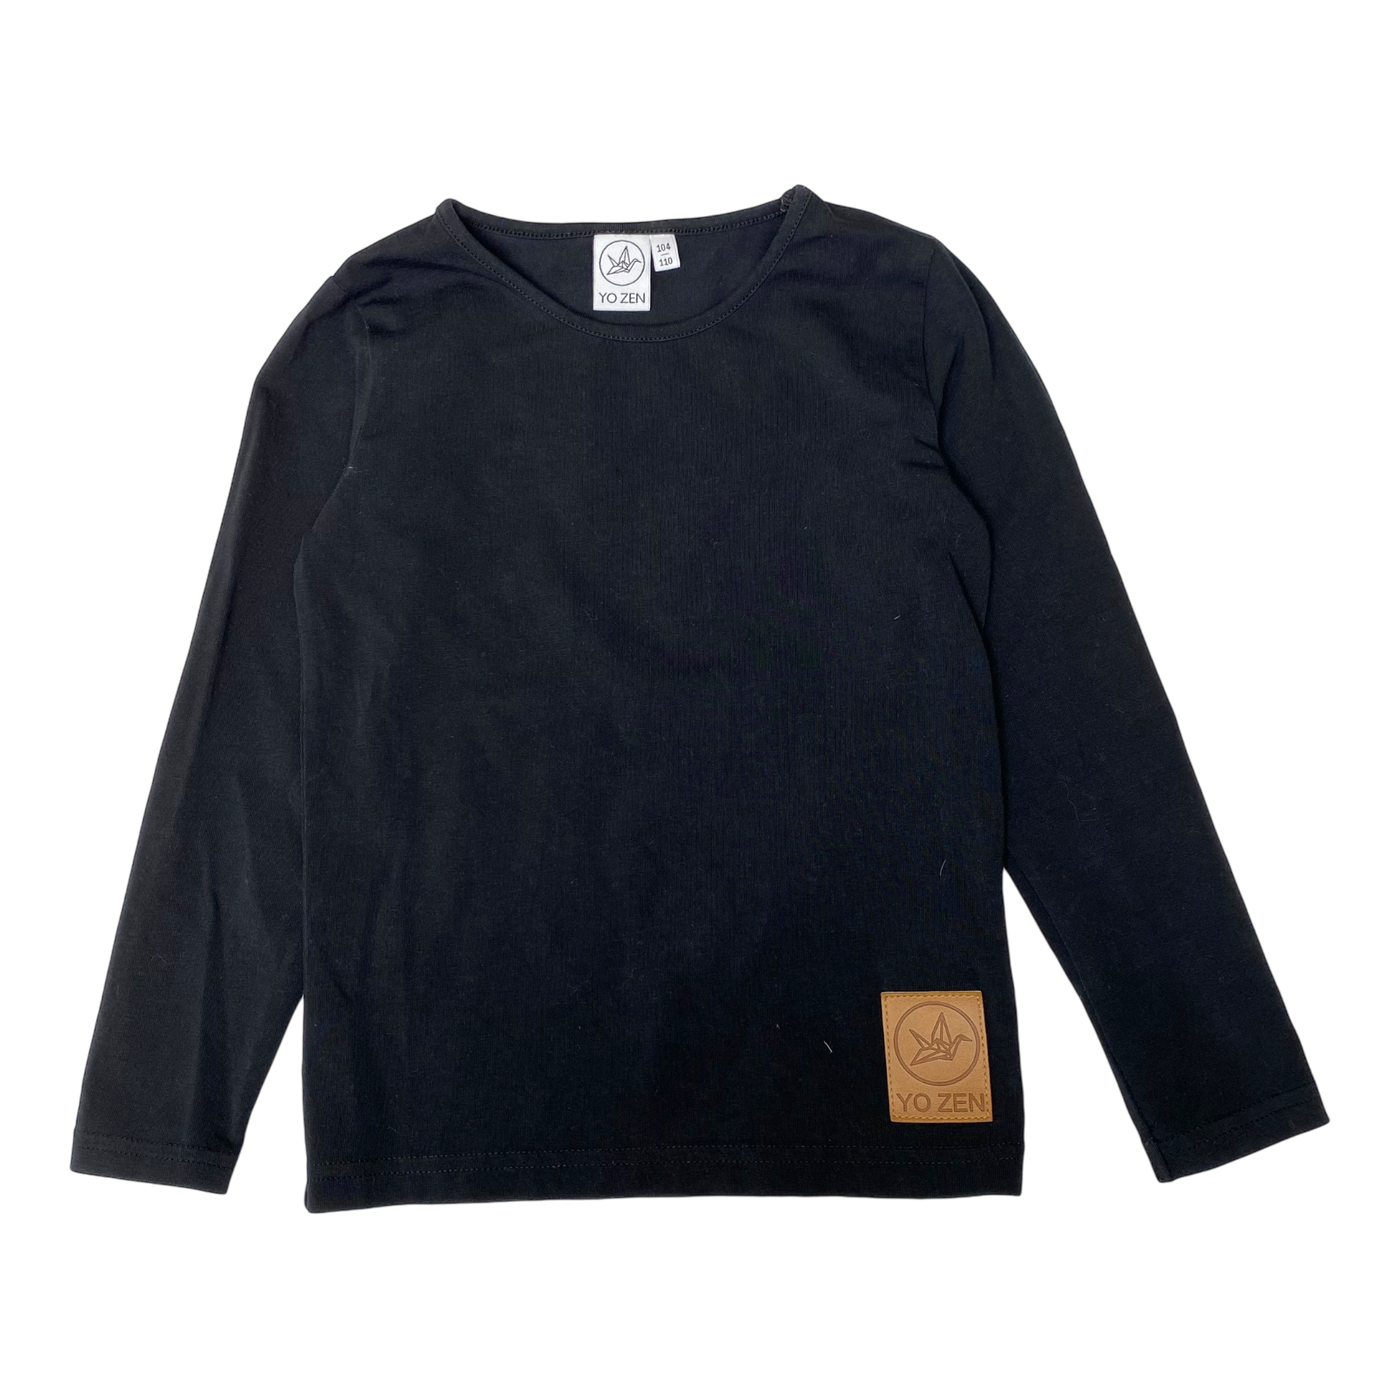 Yo Zen shirt, black | 104/110